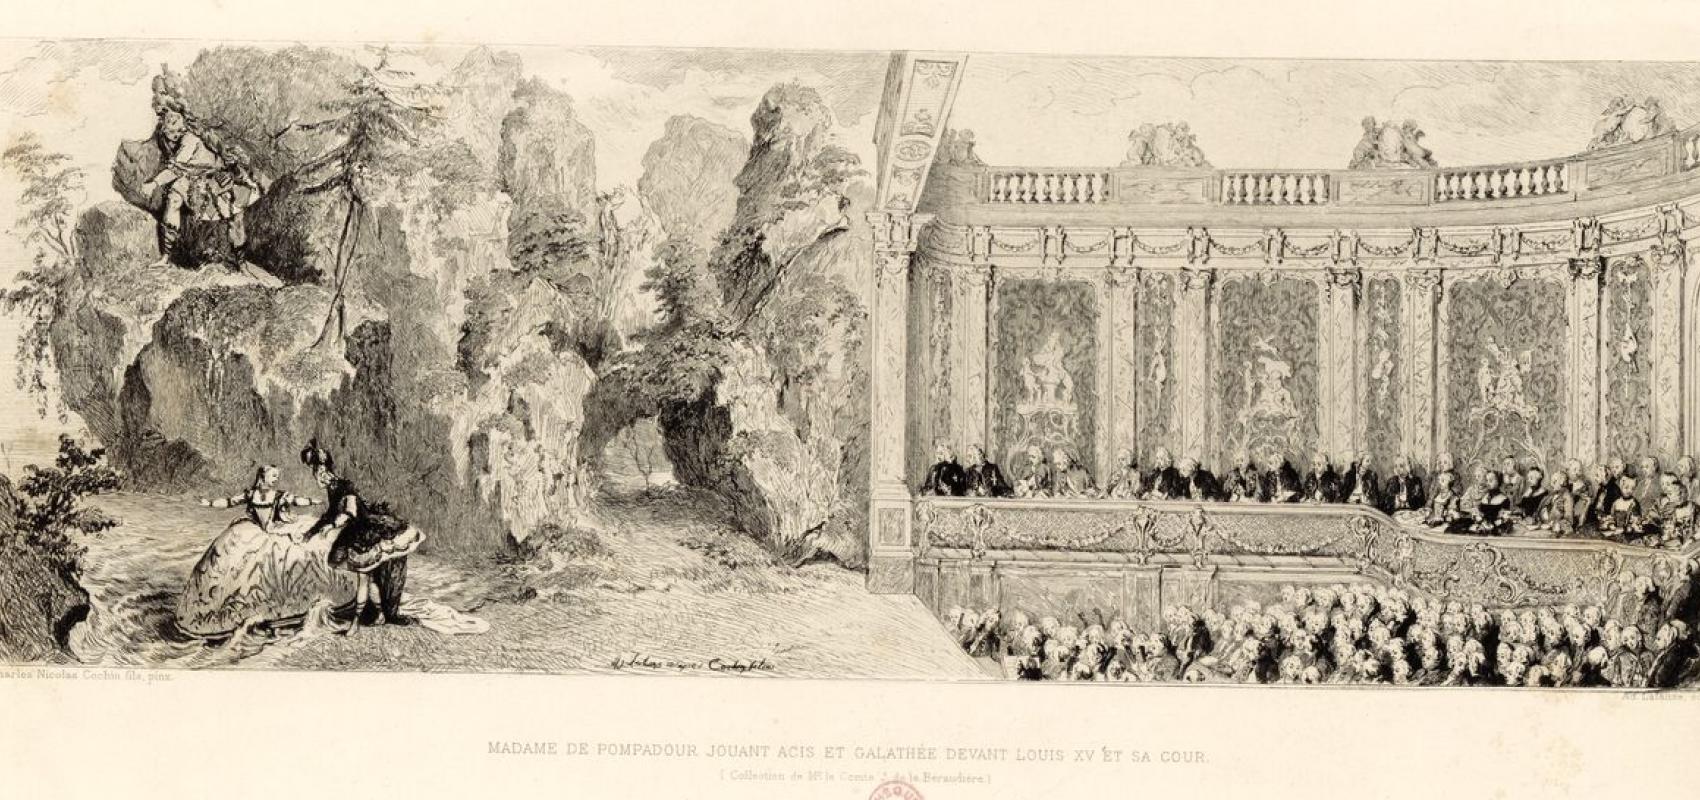 Madame de Pompadour jouant Acis et Galathée [sic] devant Louis XV et sa cour de Charles Nicolas Cochin fils -  - BnF